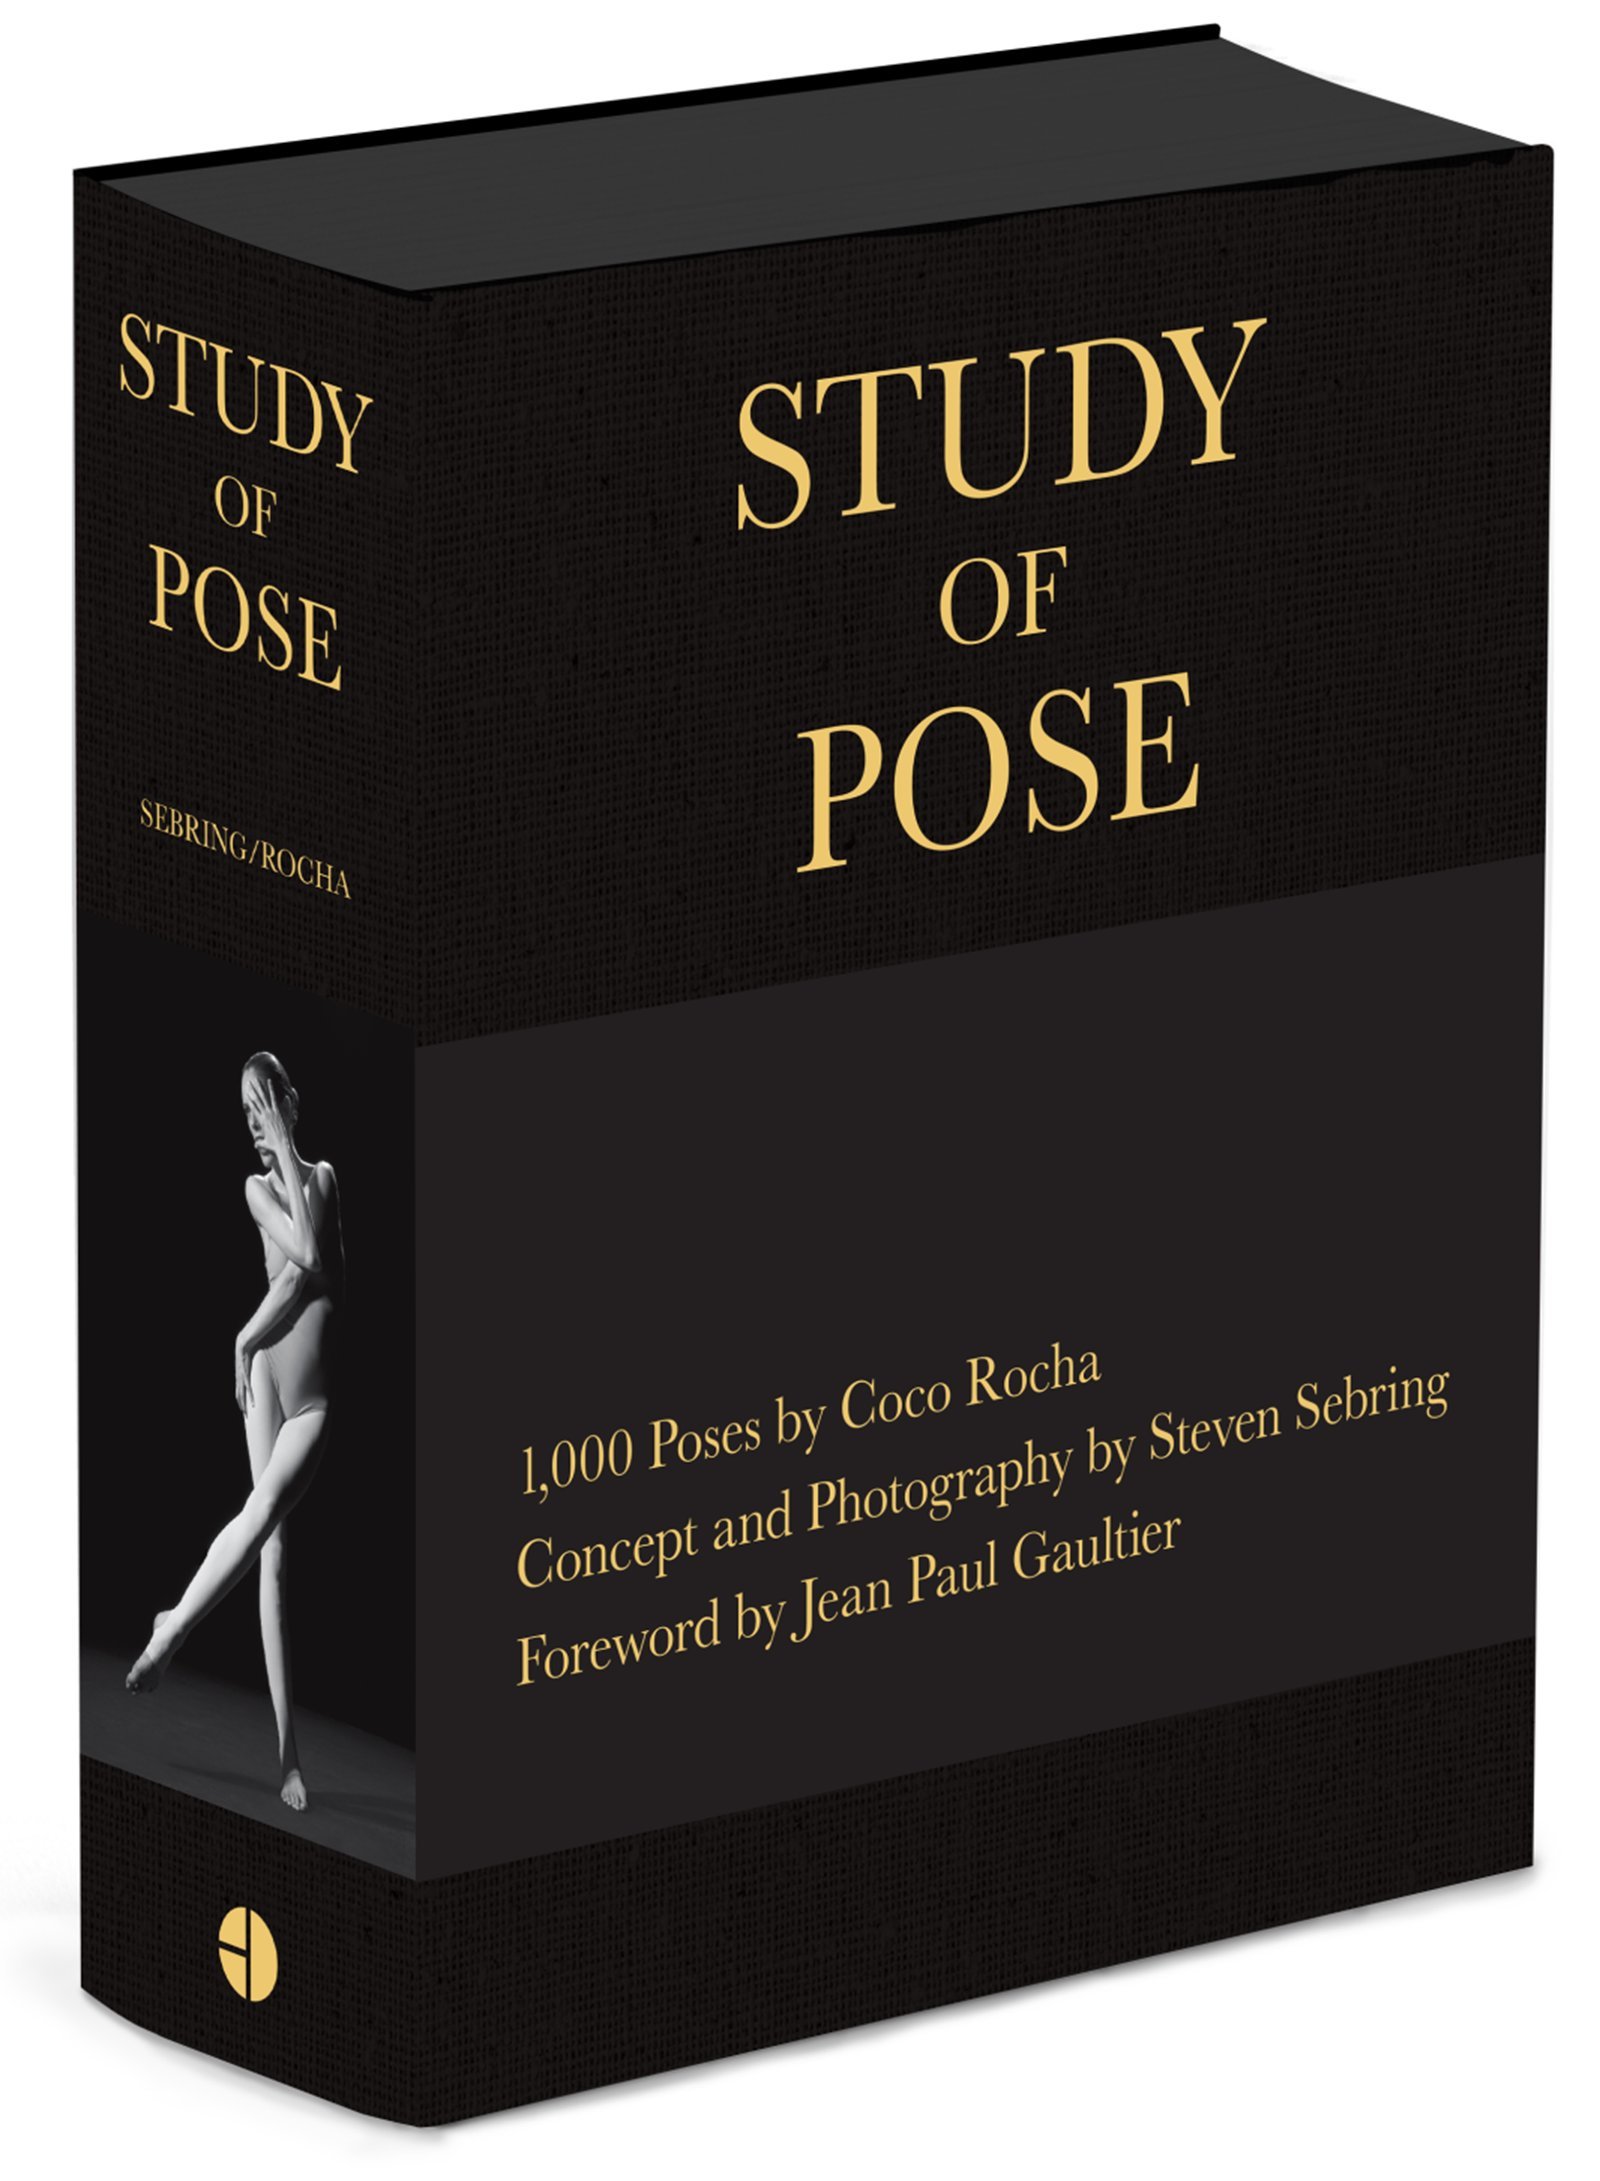 El libro “1,000 poses”: Estudiando el oficio de modelo con Coco Rocha